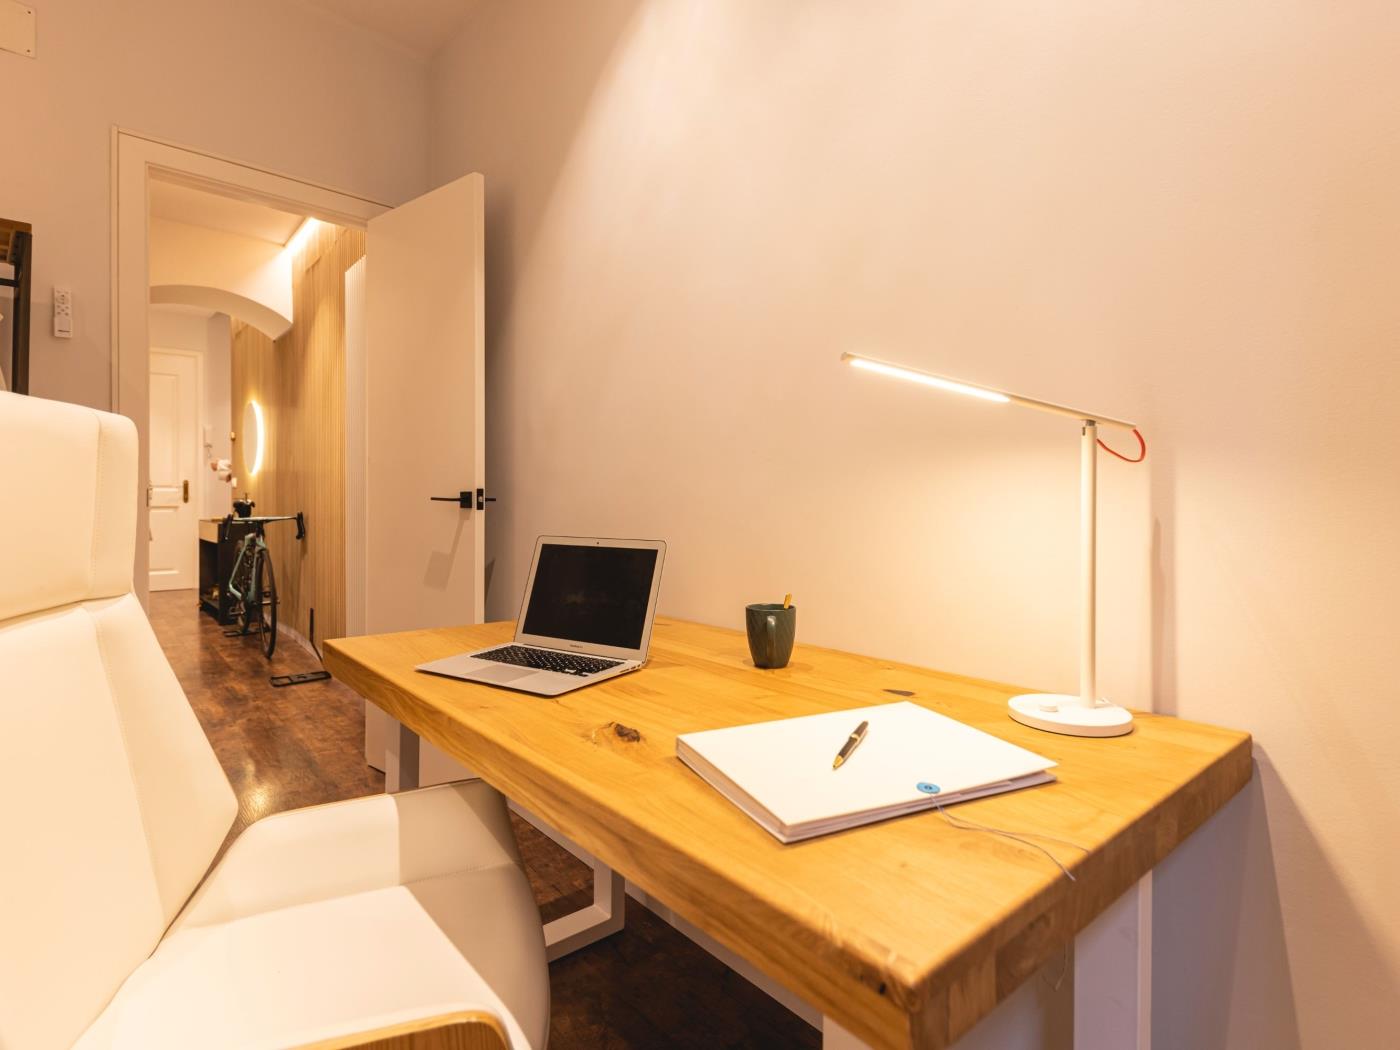 Bravissimo Ferreries, piso único de 3 dormitorios en Girona